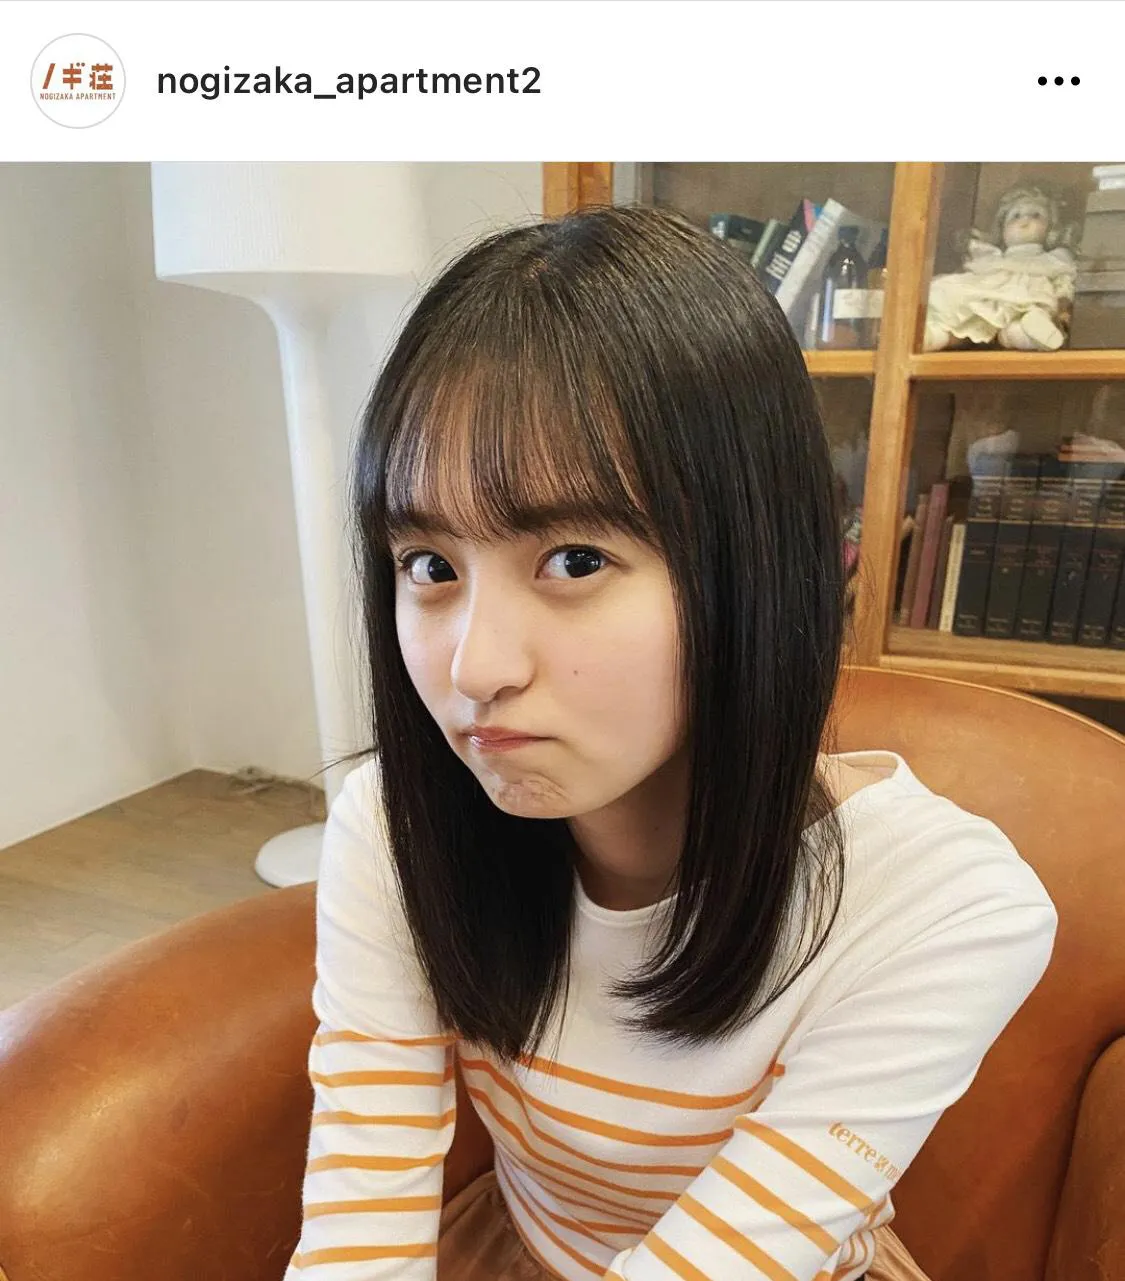 ※「乃木坂毎月劇場」公式Instagram(nogizaka_apartment2)のスクリーンショット